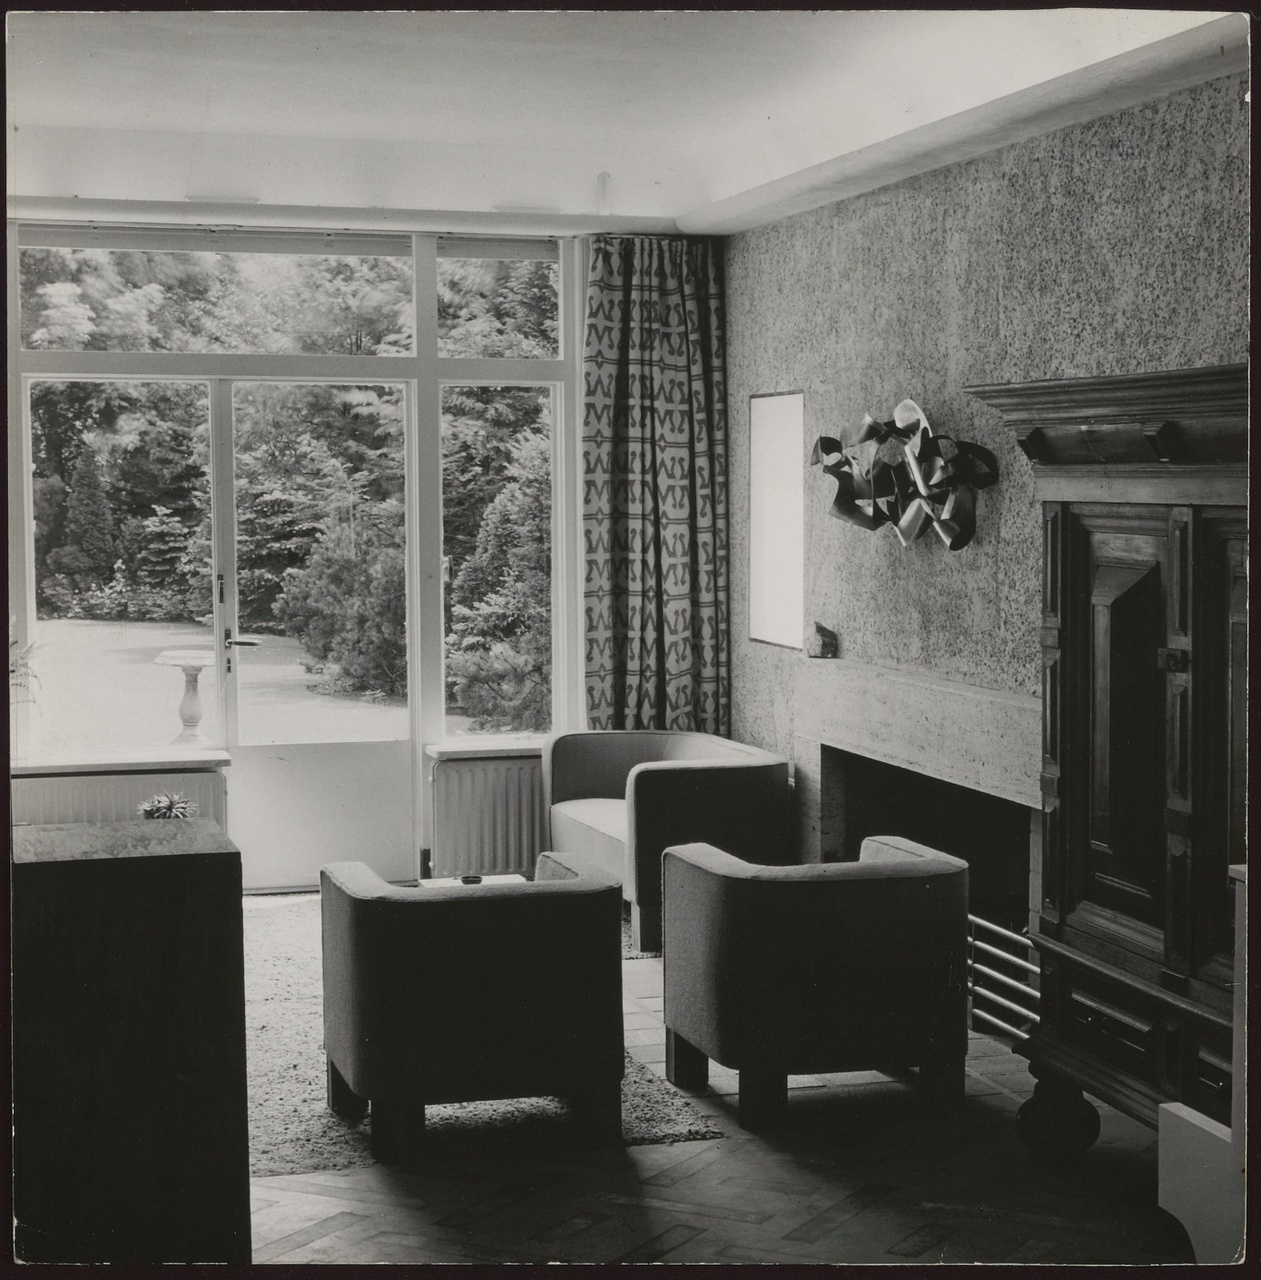 Afbeelding van woonkamer Redelé, zithoek met fauteuils bij open haard